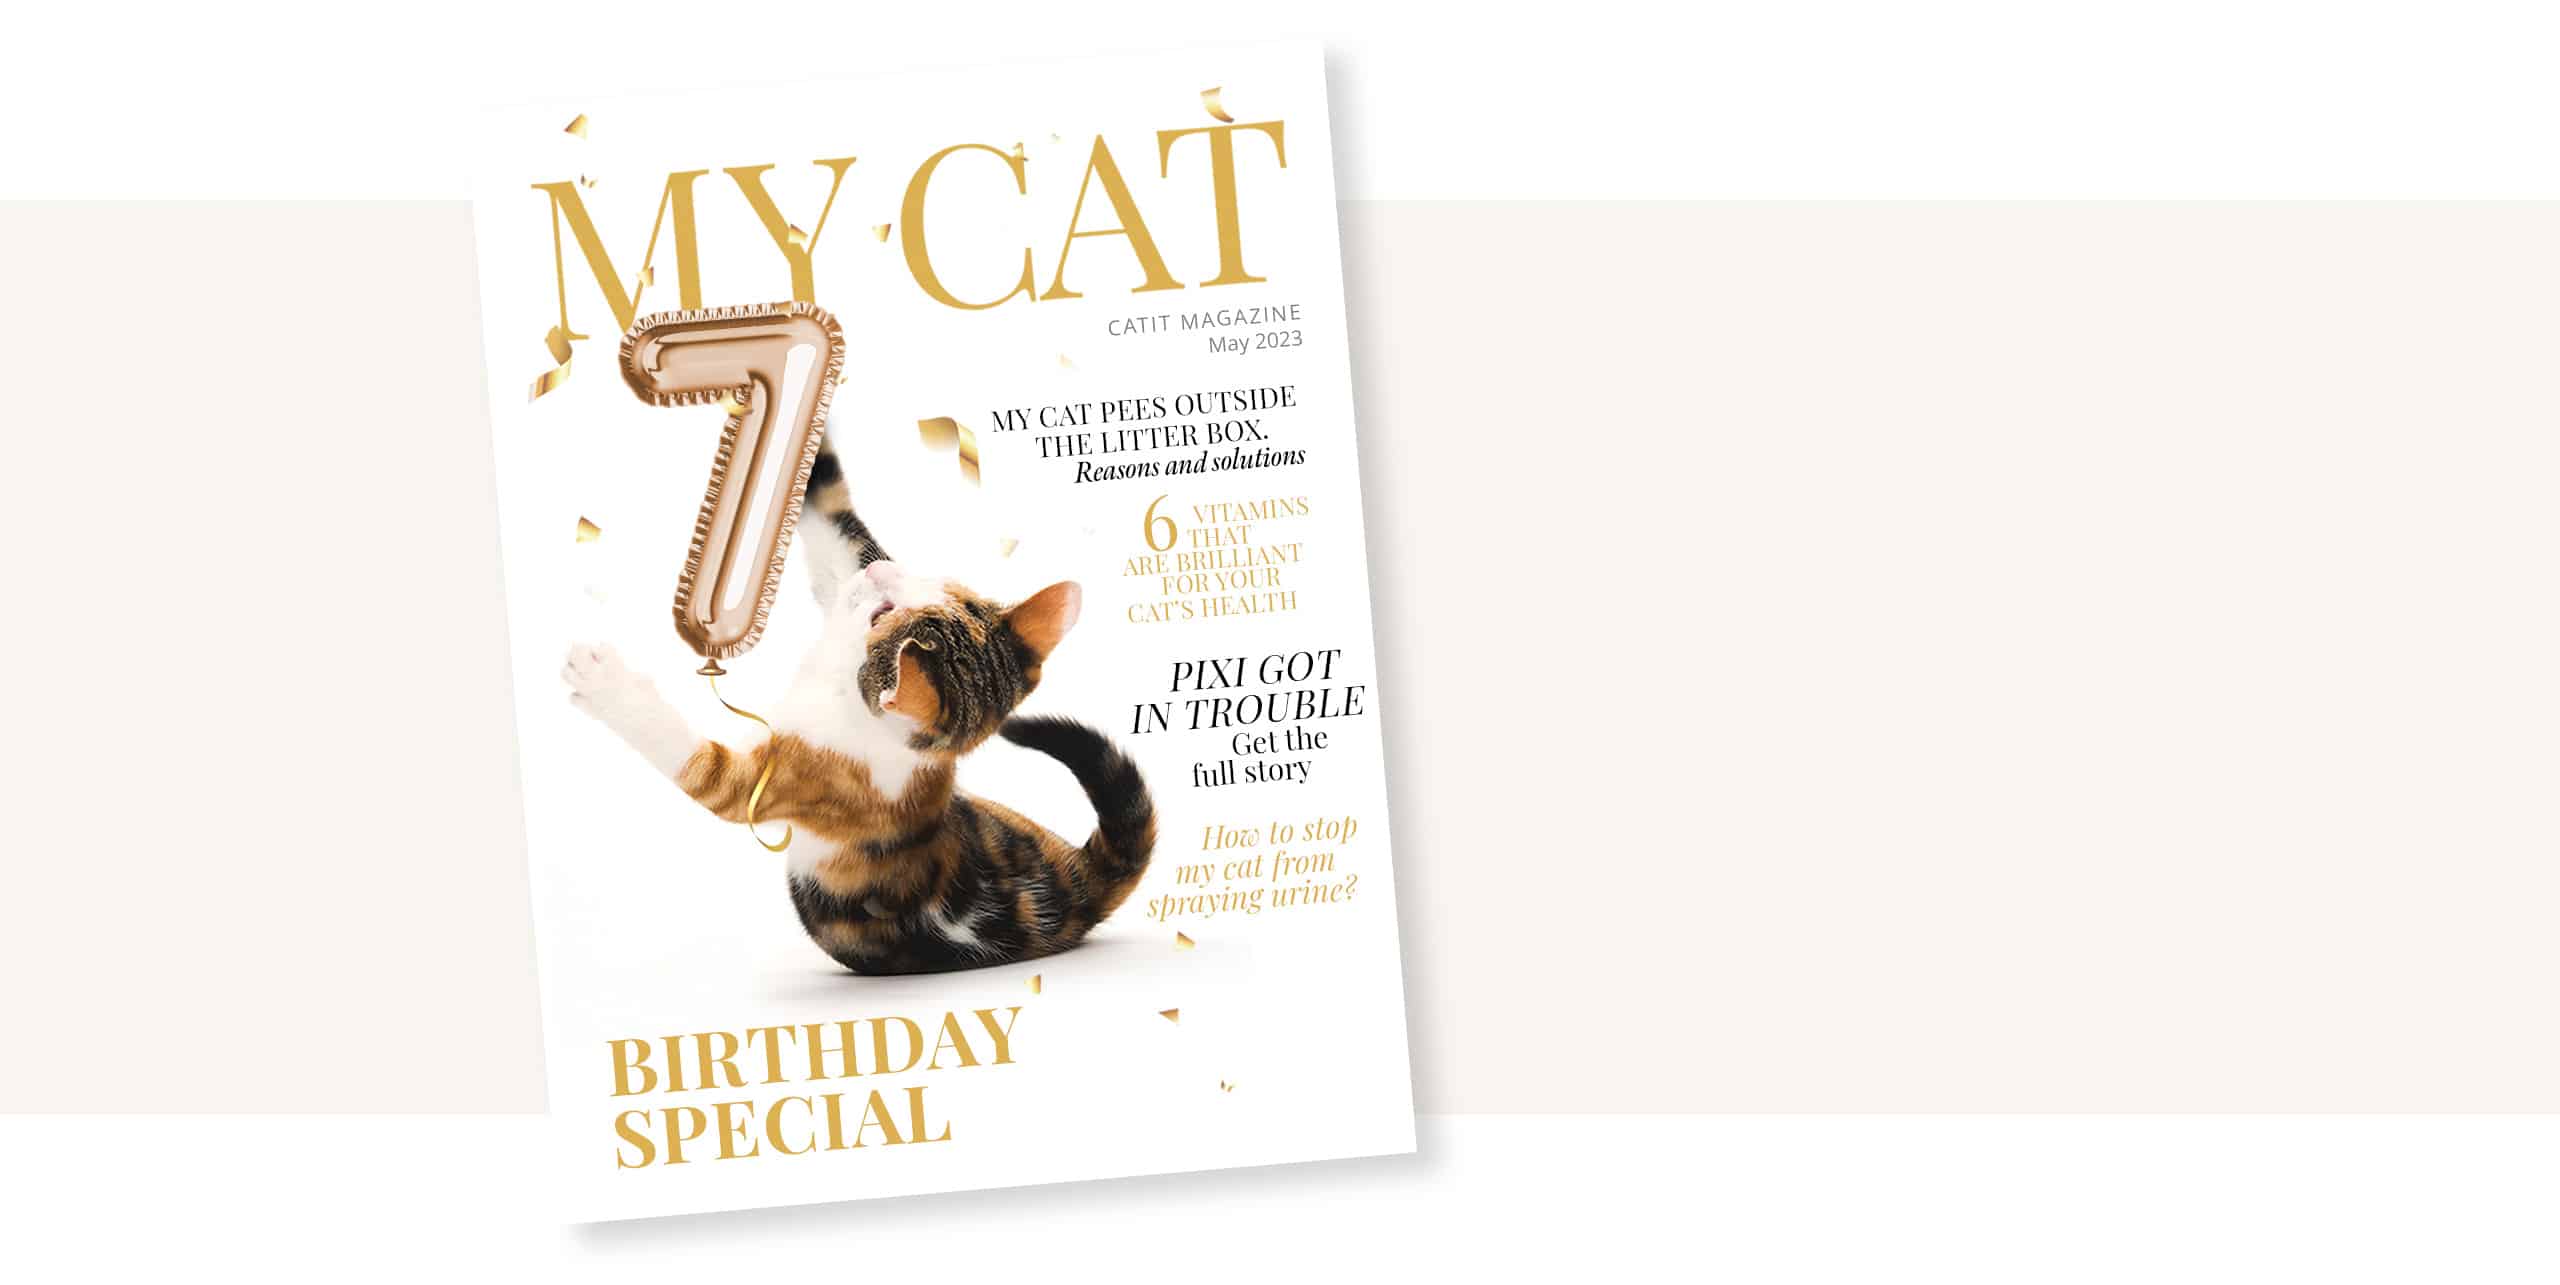 MY CAT - Catit magazine